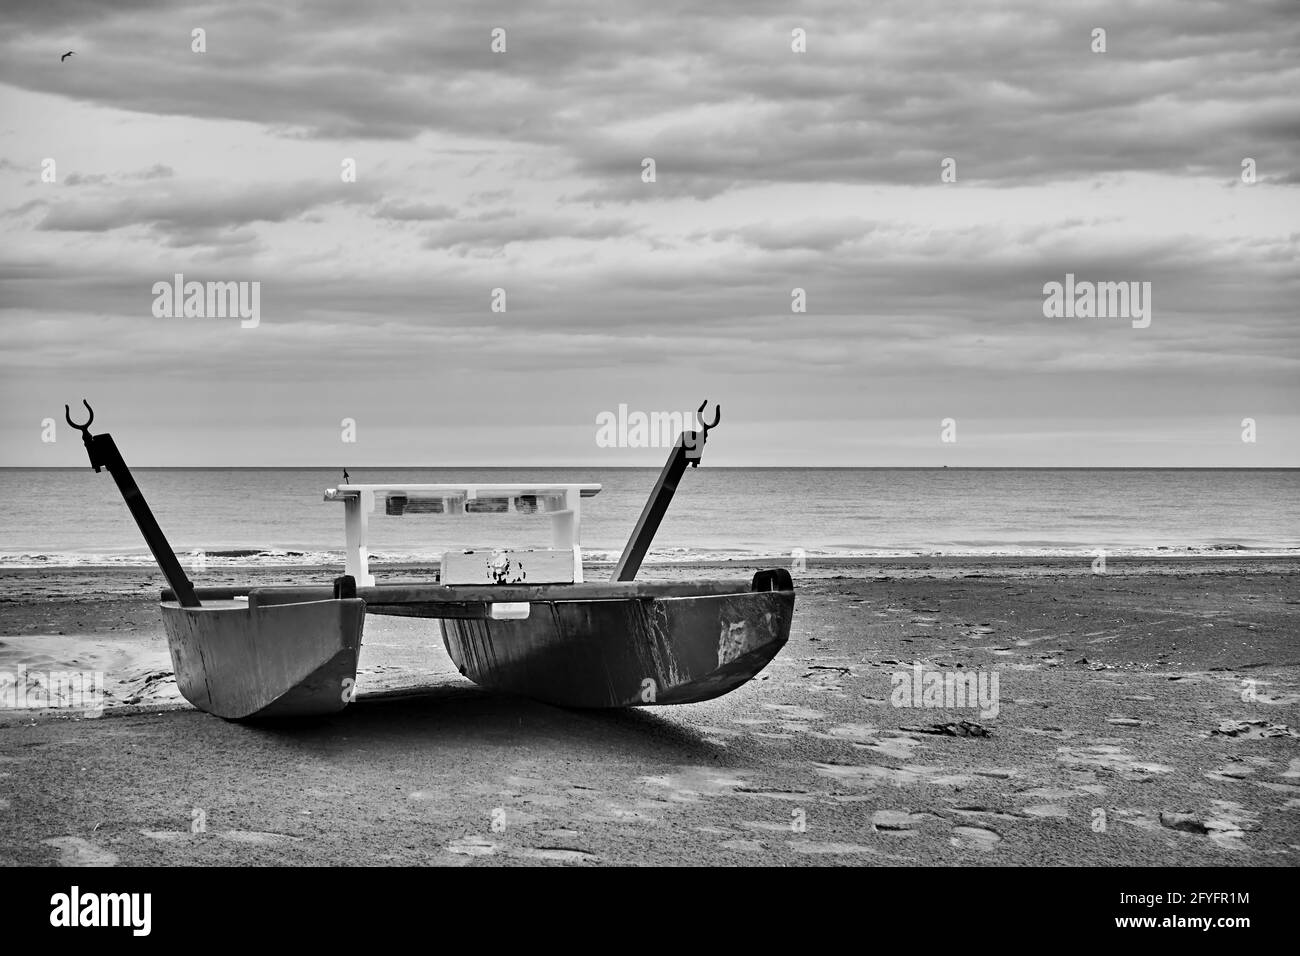 Plage déserte avec bateau de sauvetage au bord de la mer. Photographie en noir et blanc, paysage. Rimini, Italie Banque D'Images